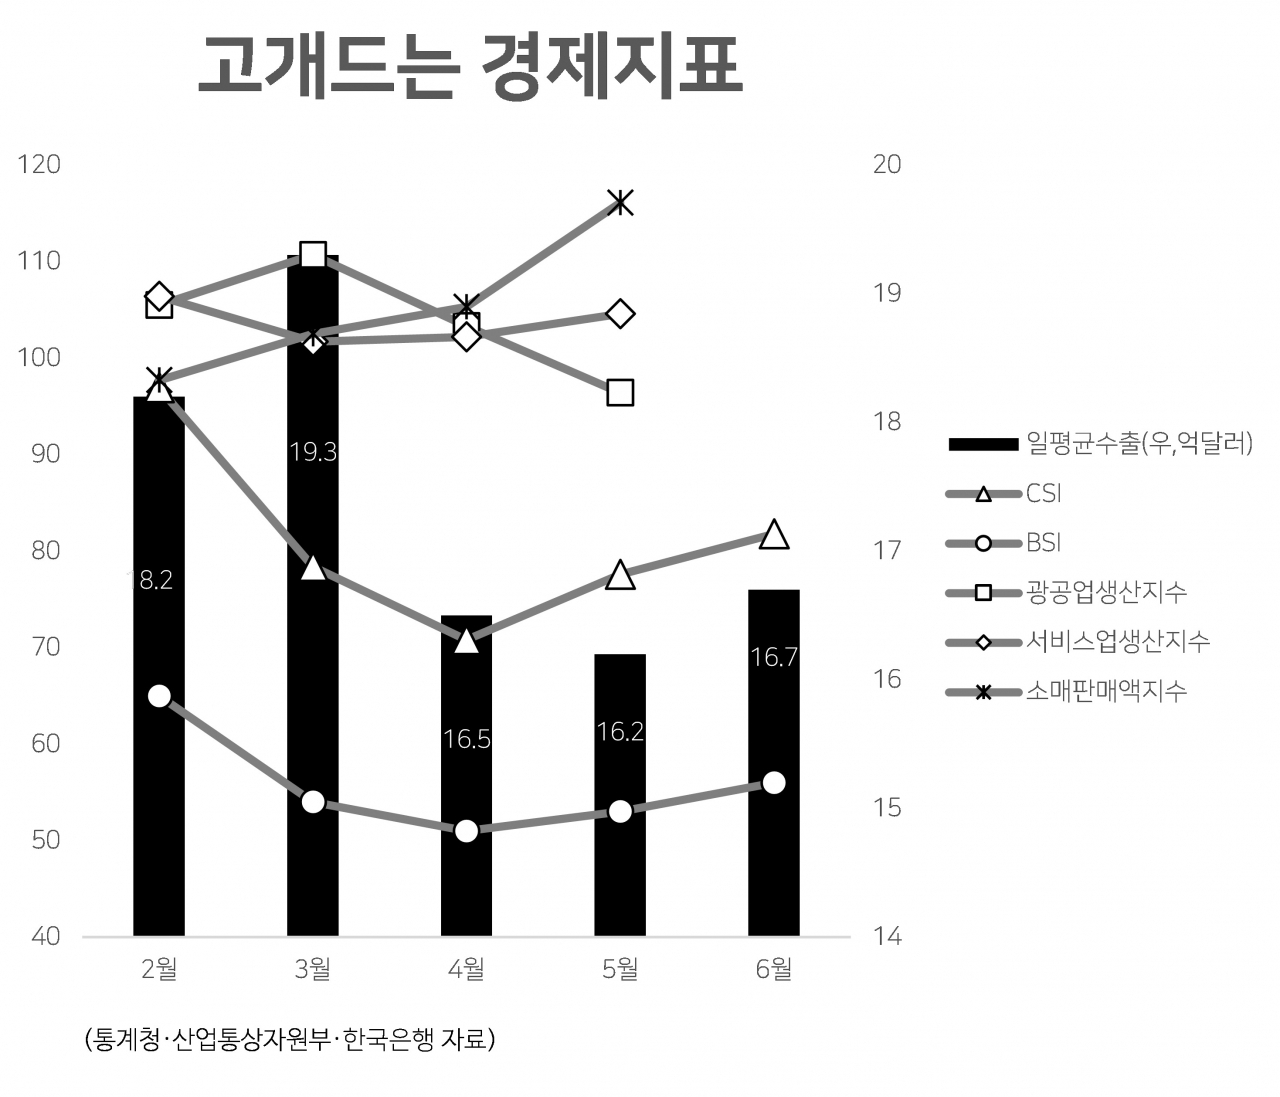 [헤럴드경제] 韓경제, 예상보다 빠른 반등…역성장 벗어나나 : [보도기사] 김현욱 교수